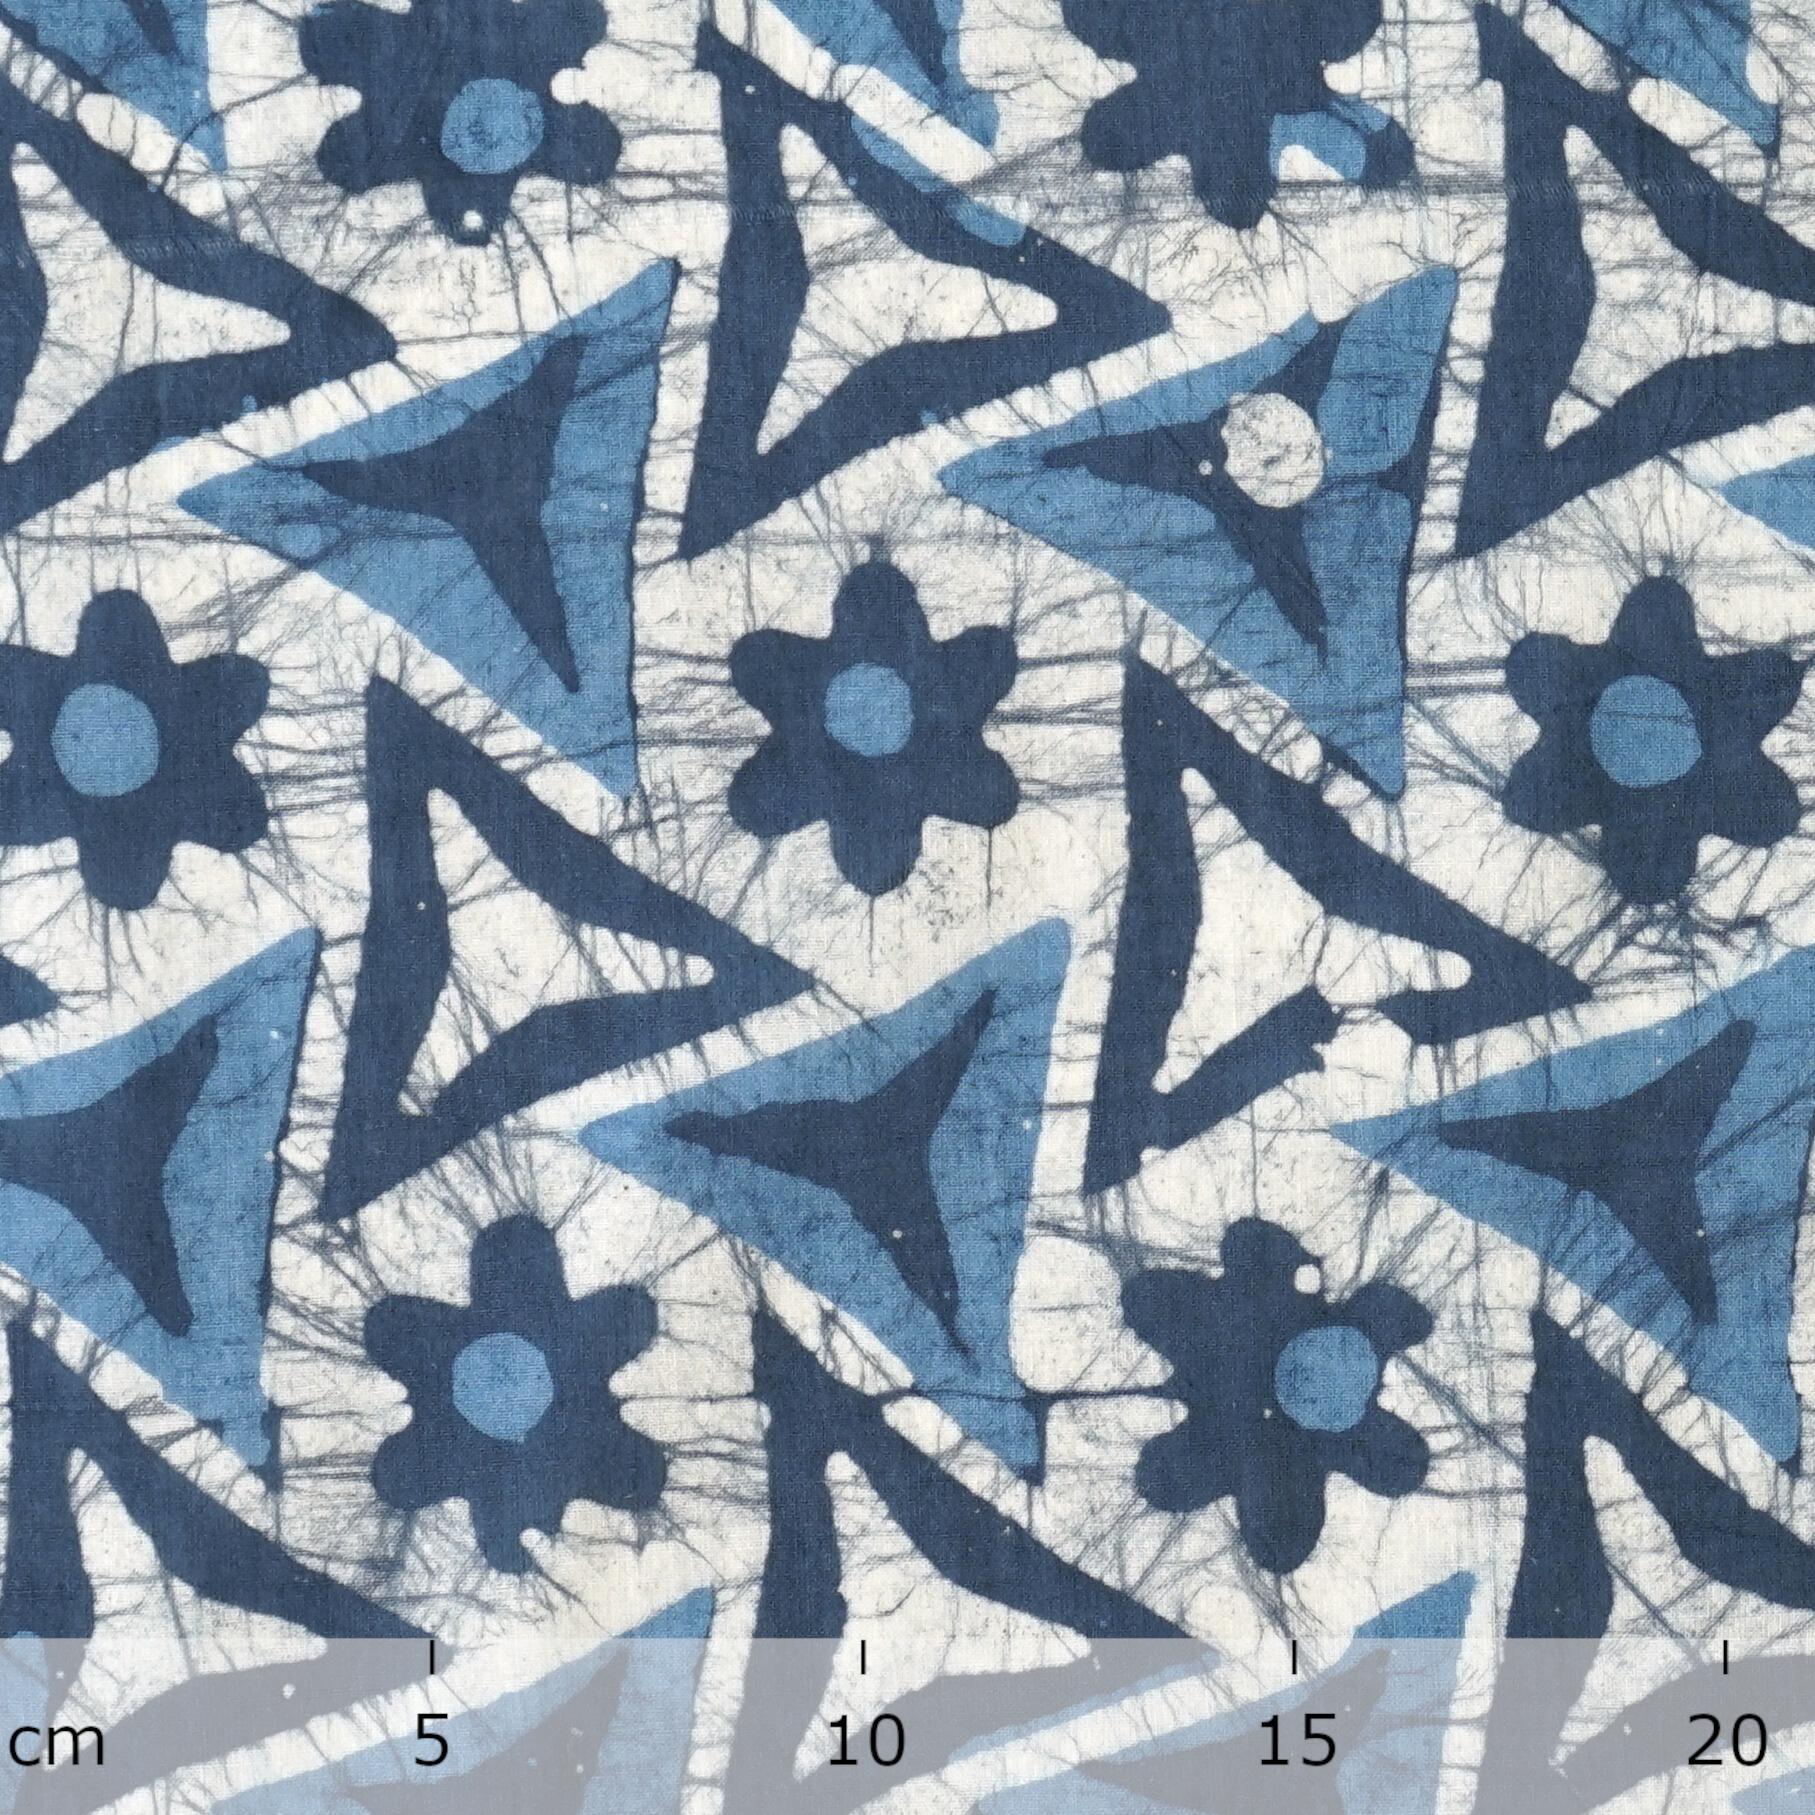 100% Block-Printed Batik Cotton Fabric From India - Tri Blade Motif - Ruler